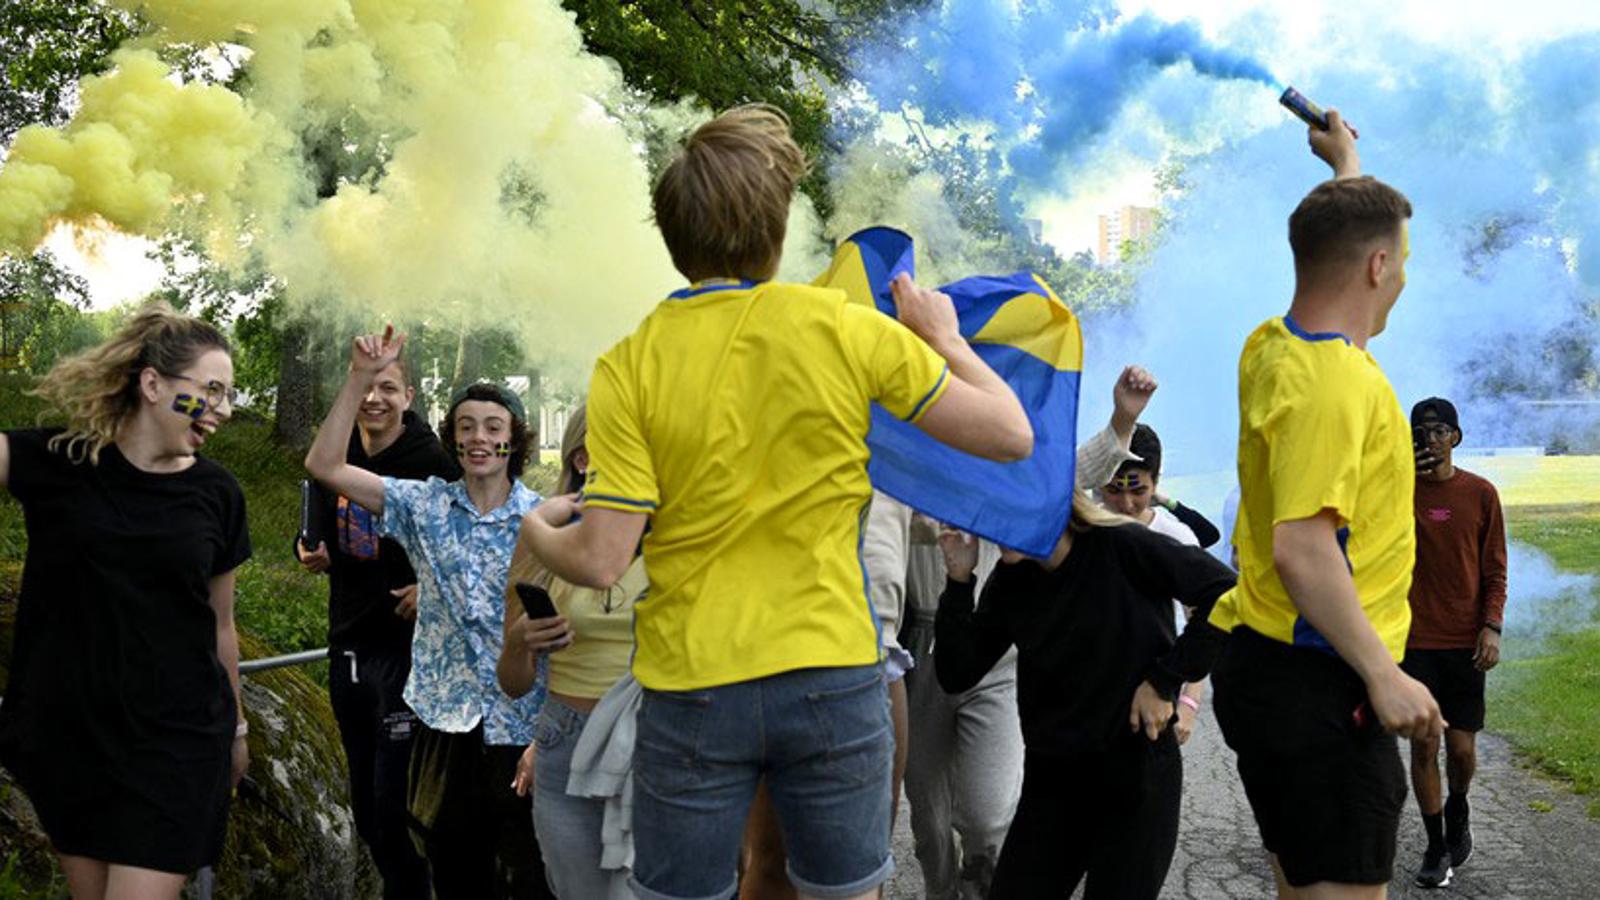 Glada konfirmander i blåa och gula kläder. De har Sverige-flaggor målade i ansiktet.